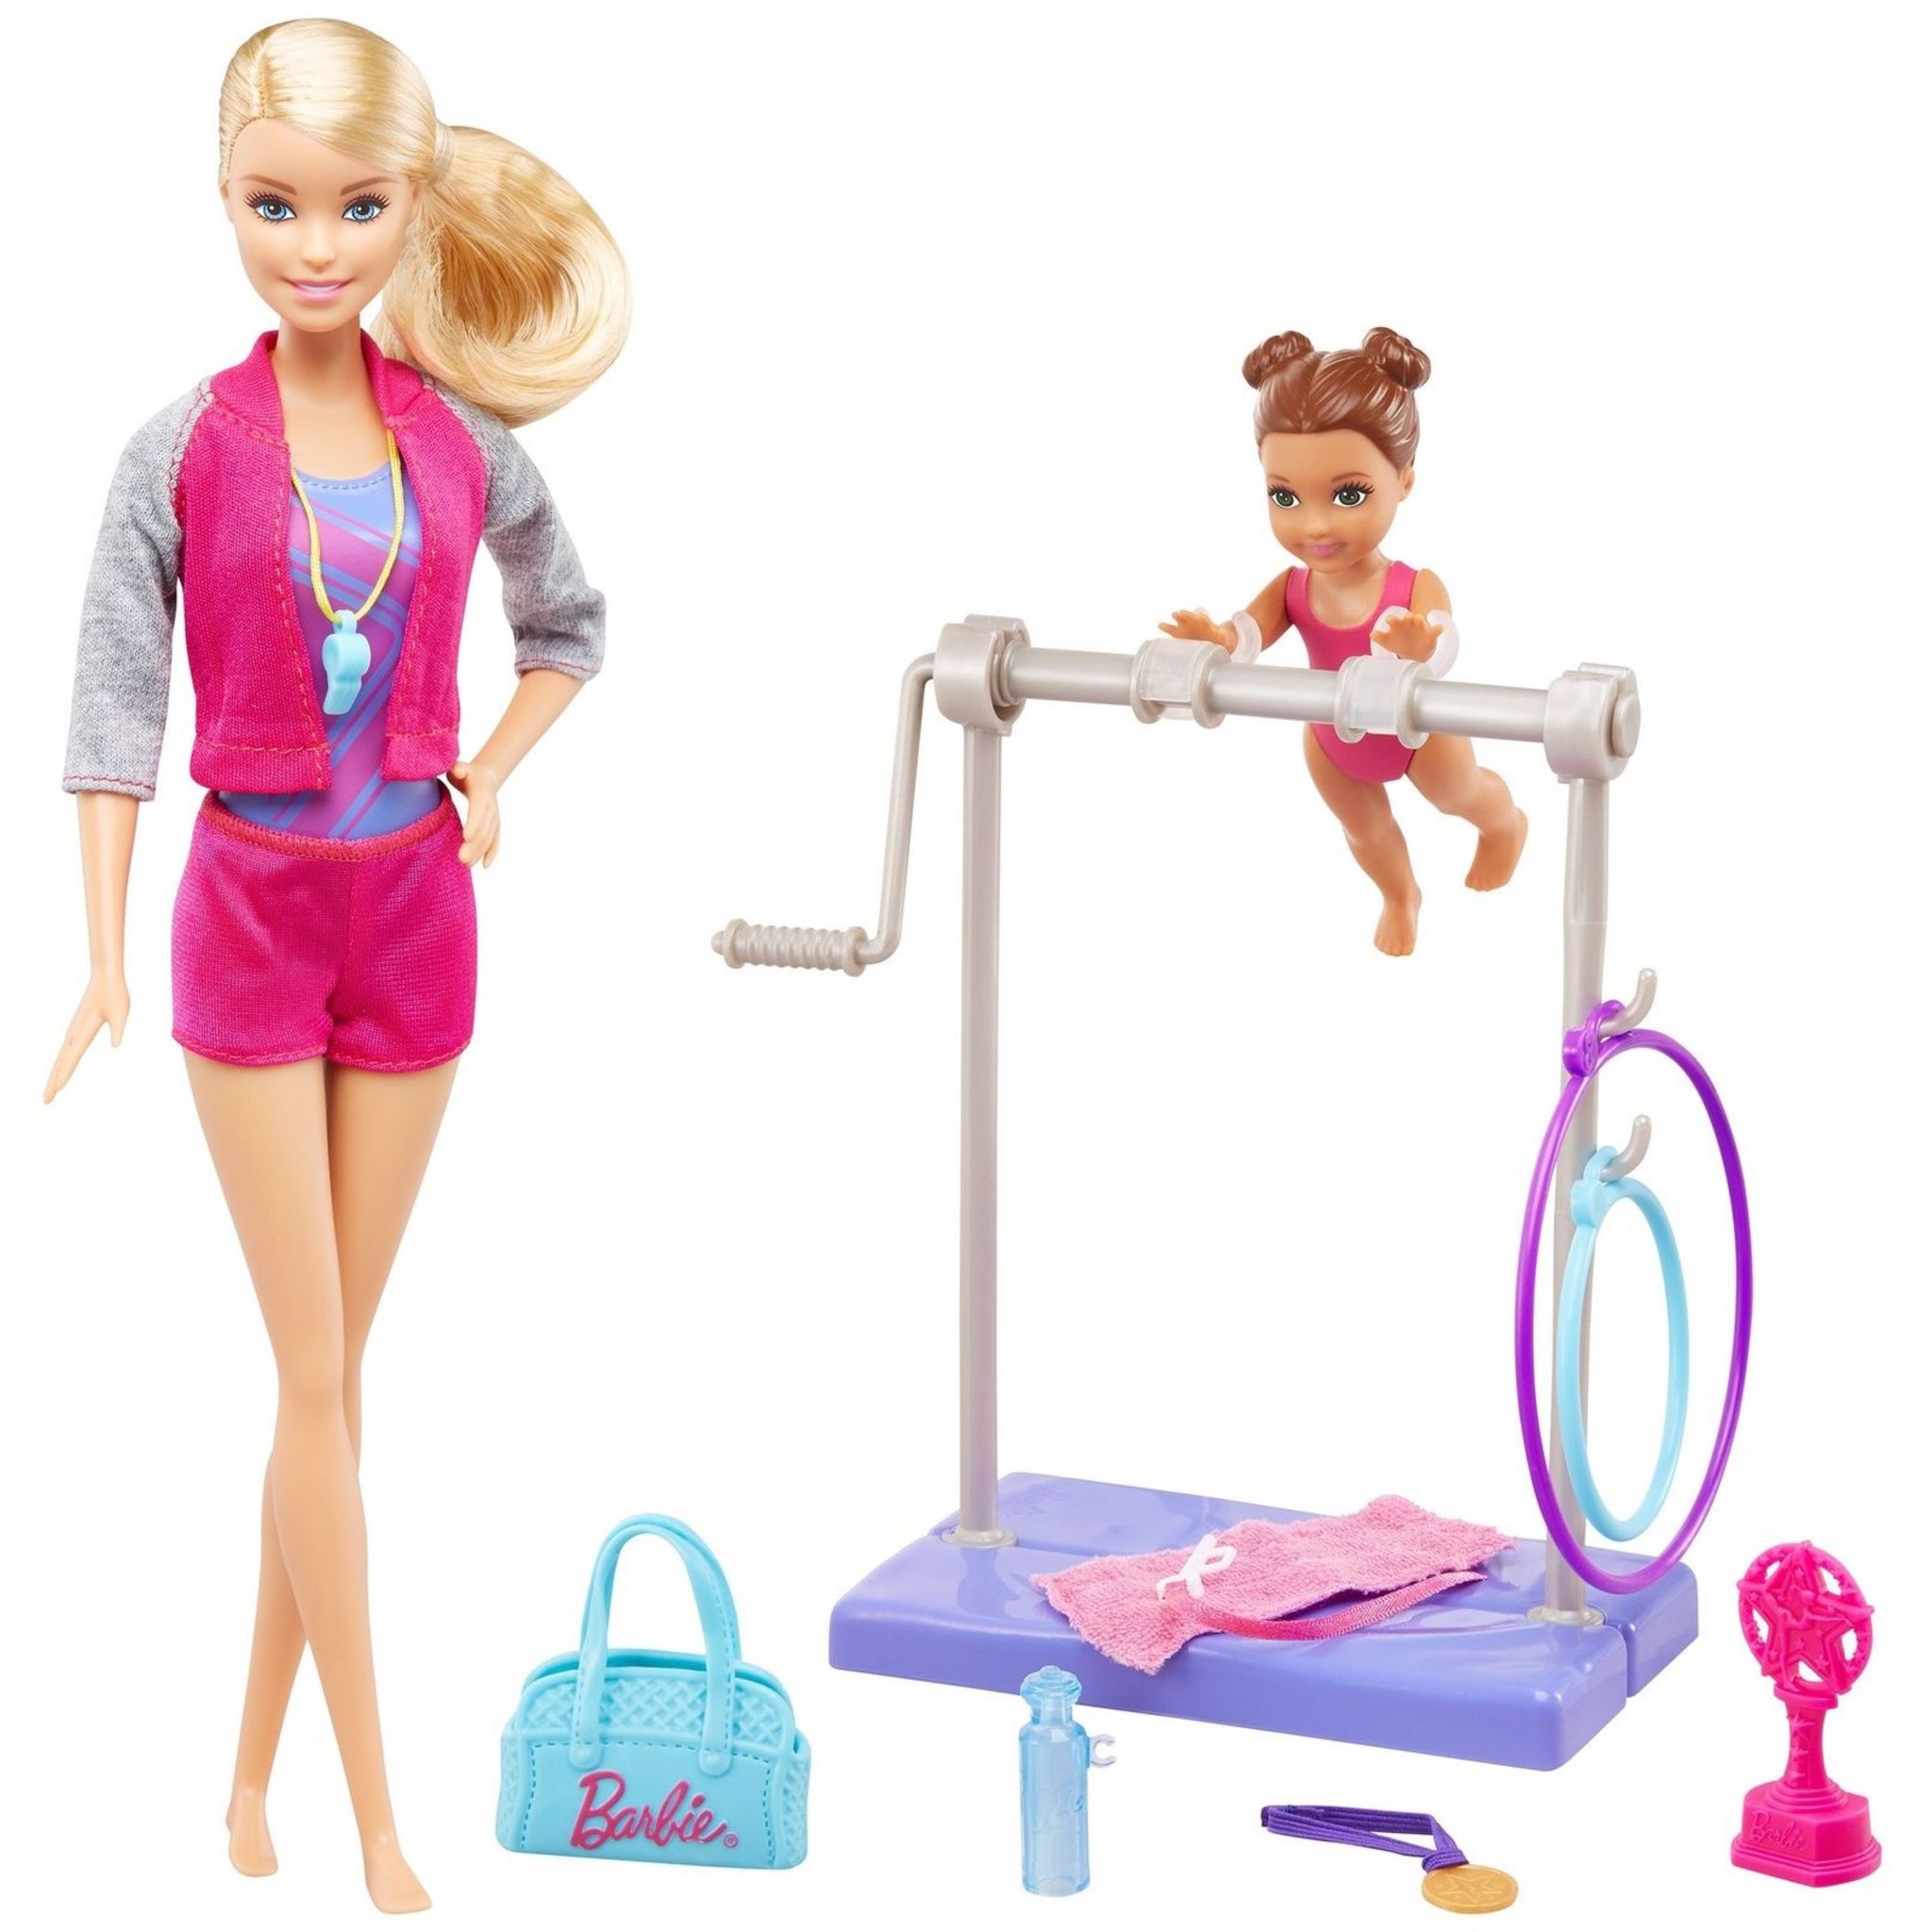 Игрушка барби купить. Набор Барби гимнастка детский мир. Барби гимнастка gjm72. Игровой набор кукла Барби гимнастка. Кукла гимнастка Барби детский мир.